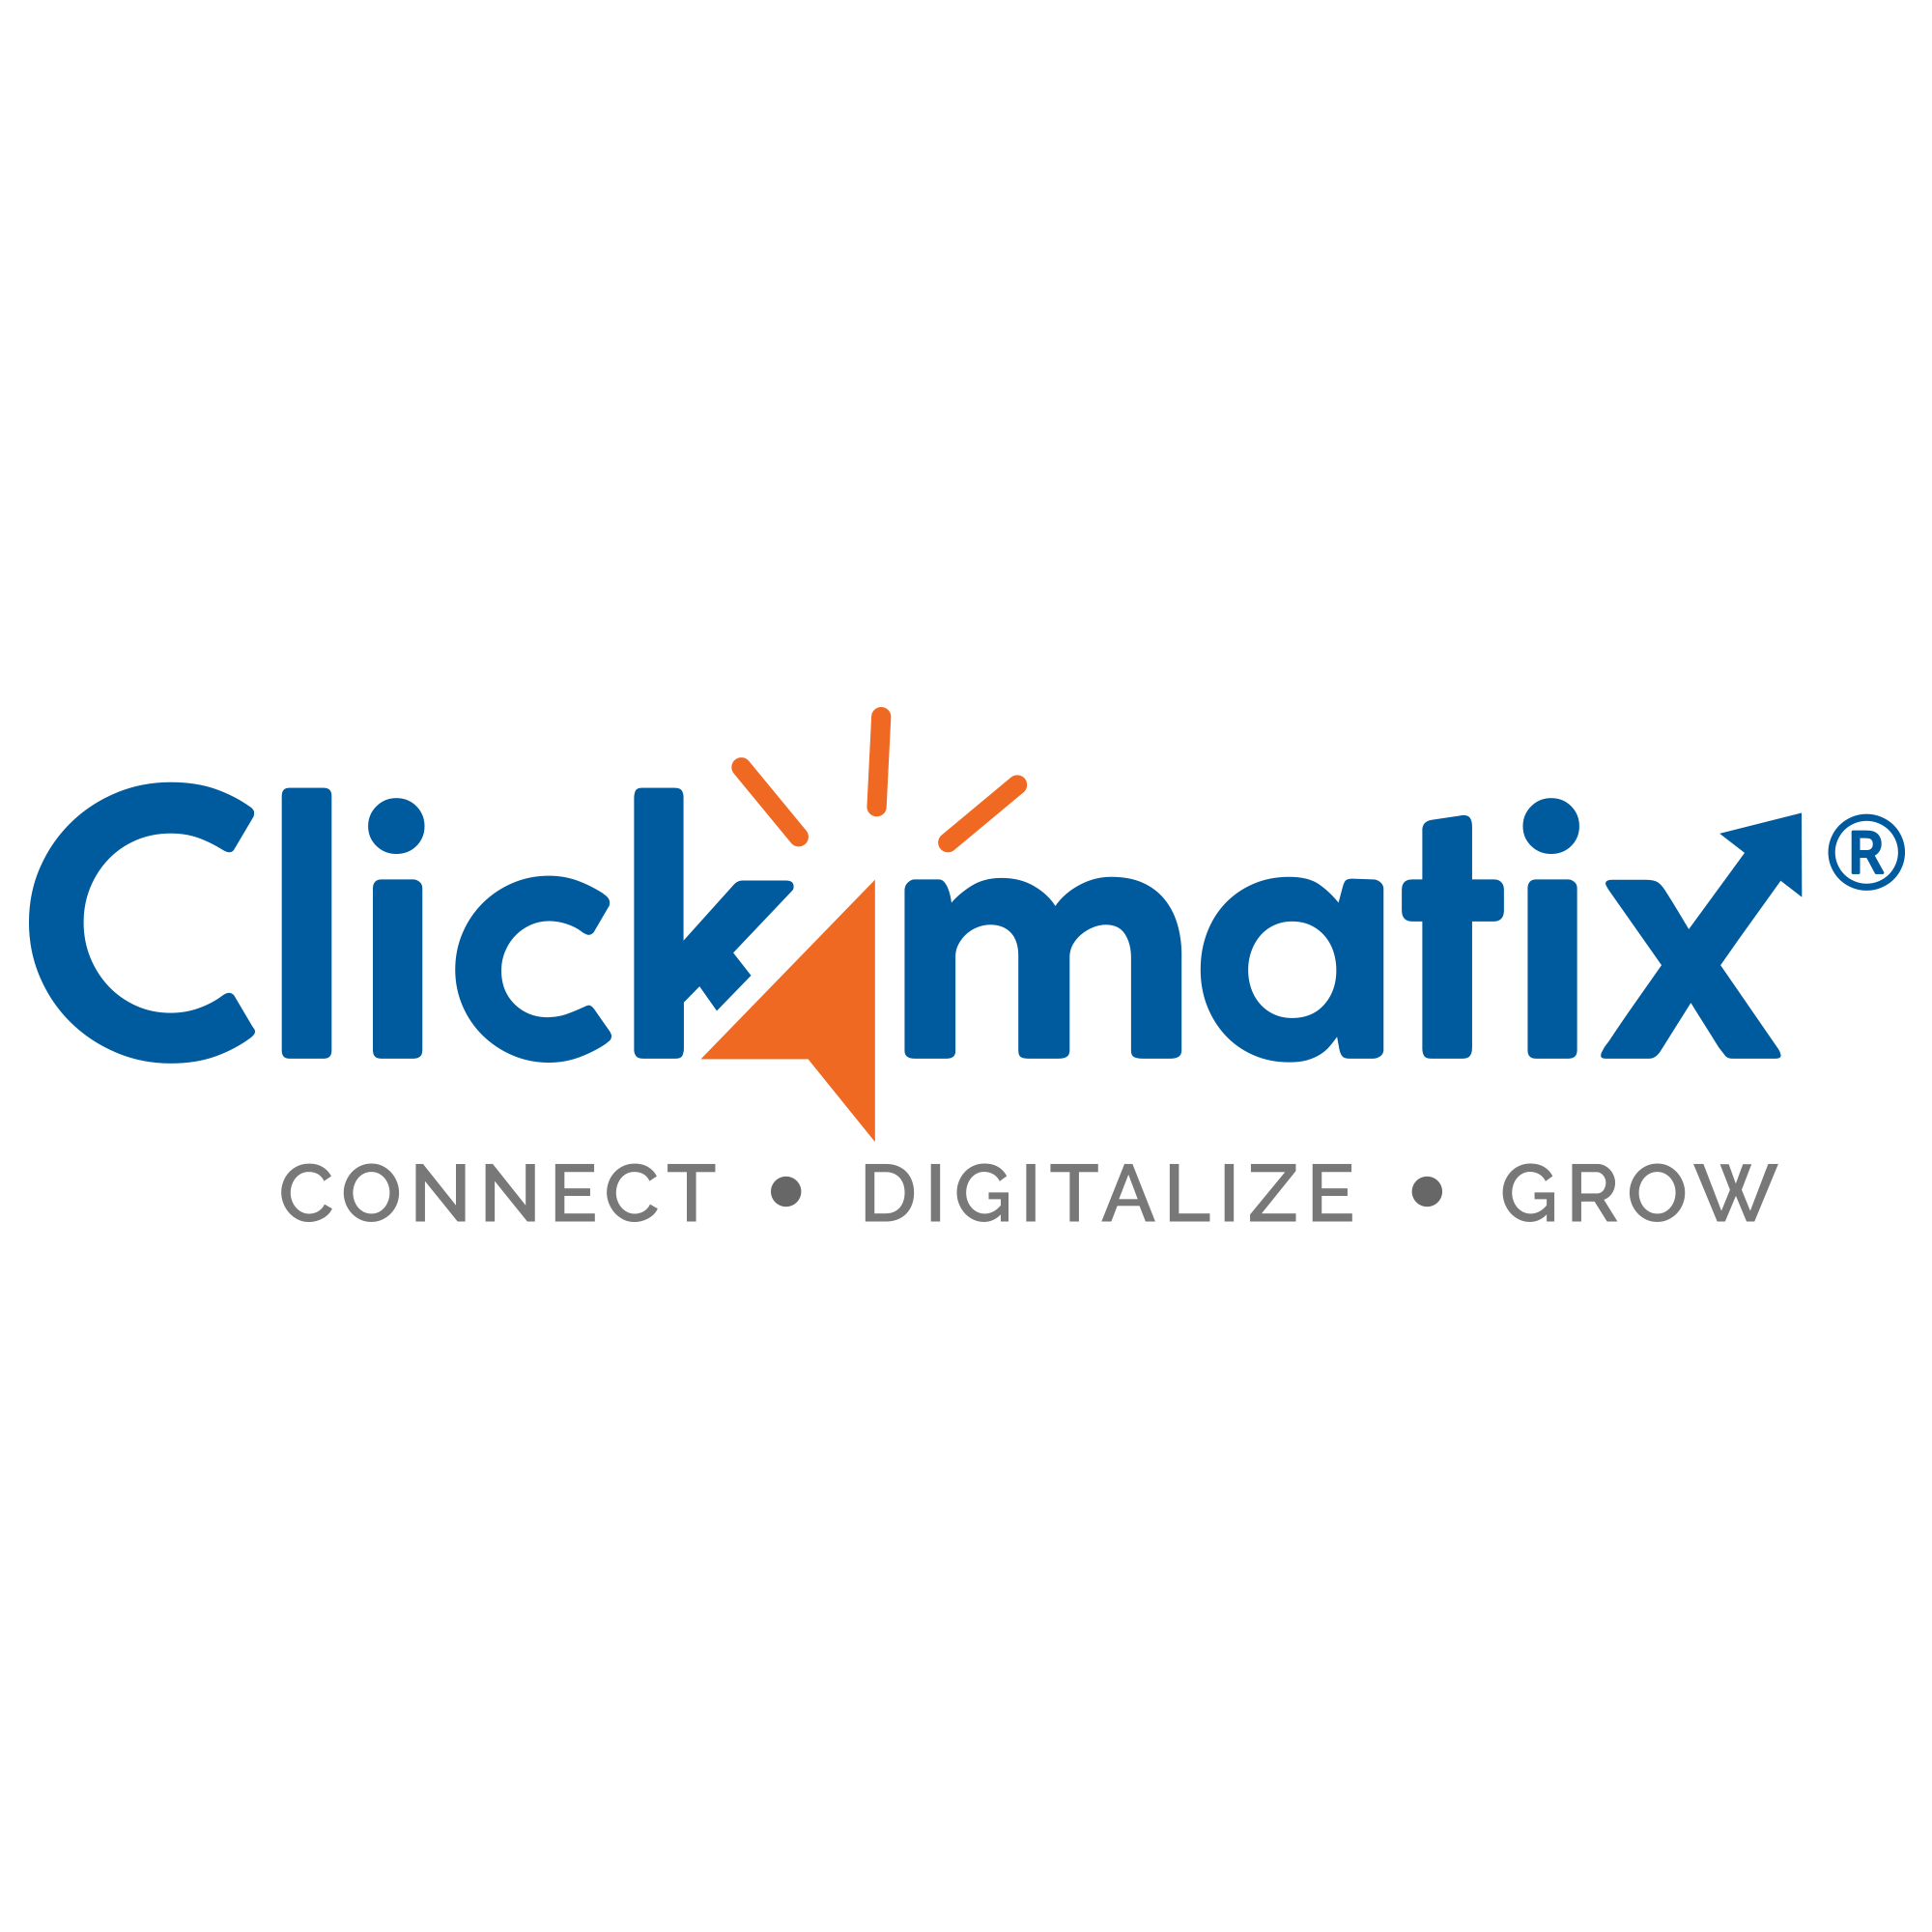 Clickmatix Pty Ltd